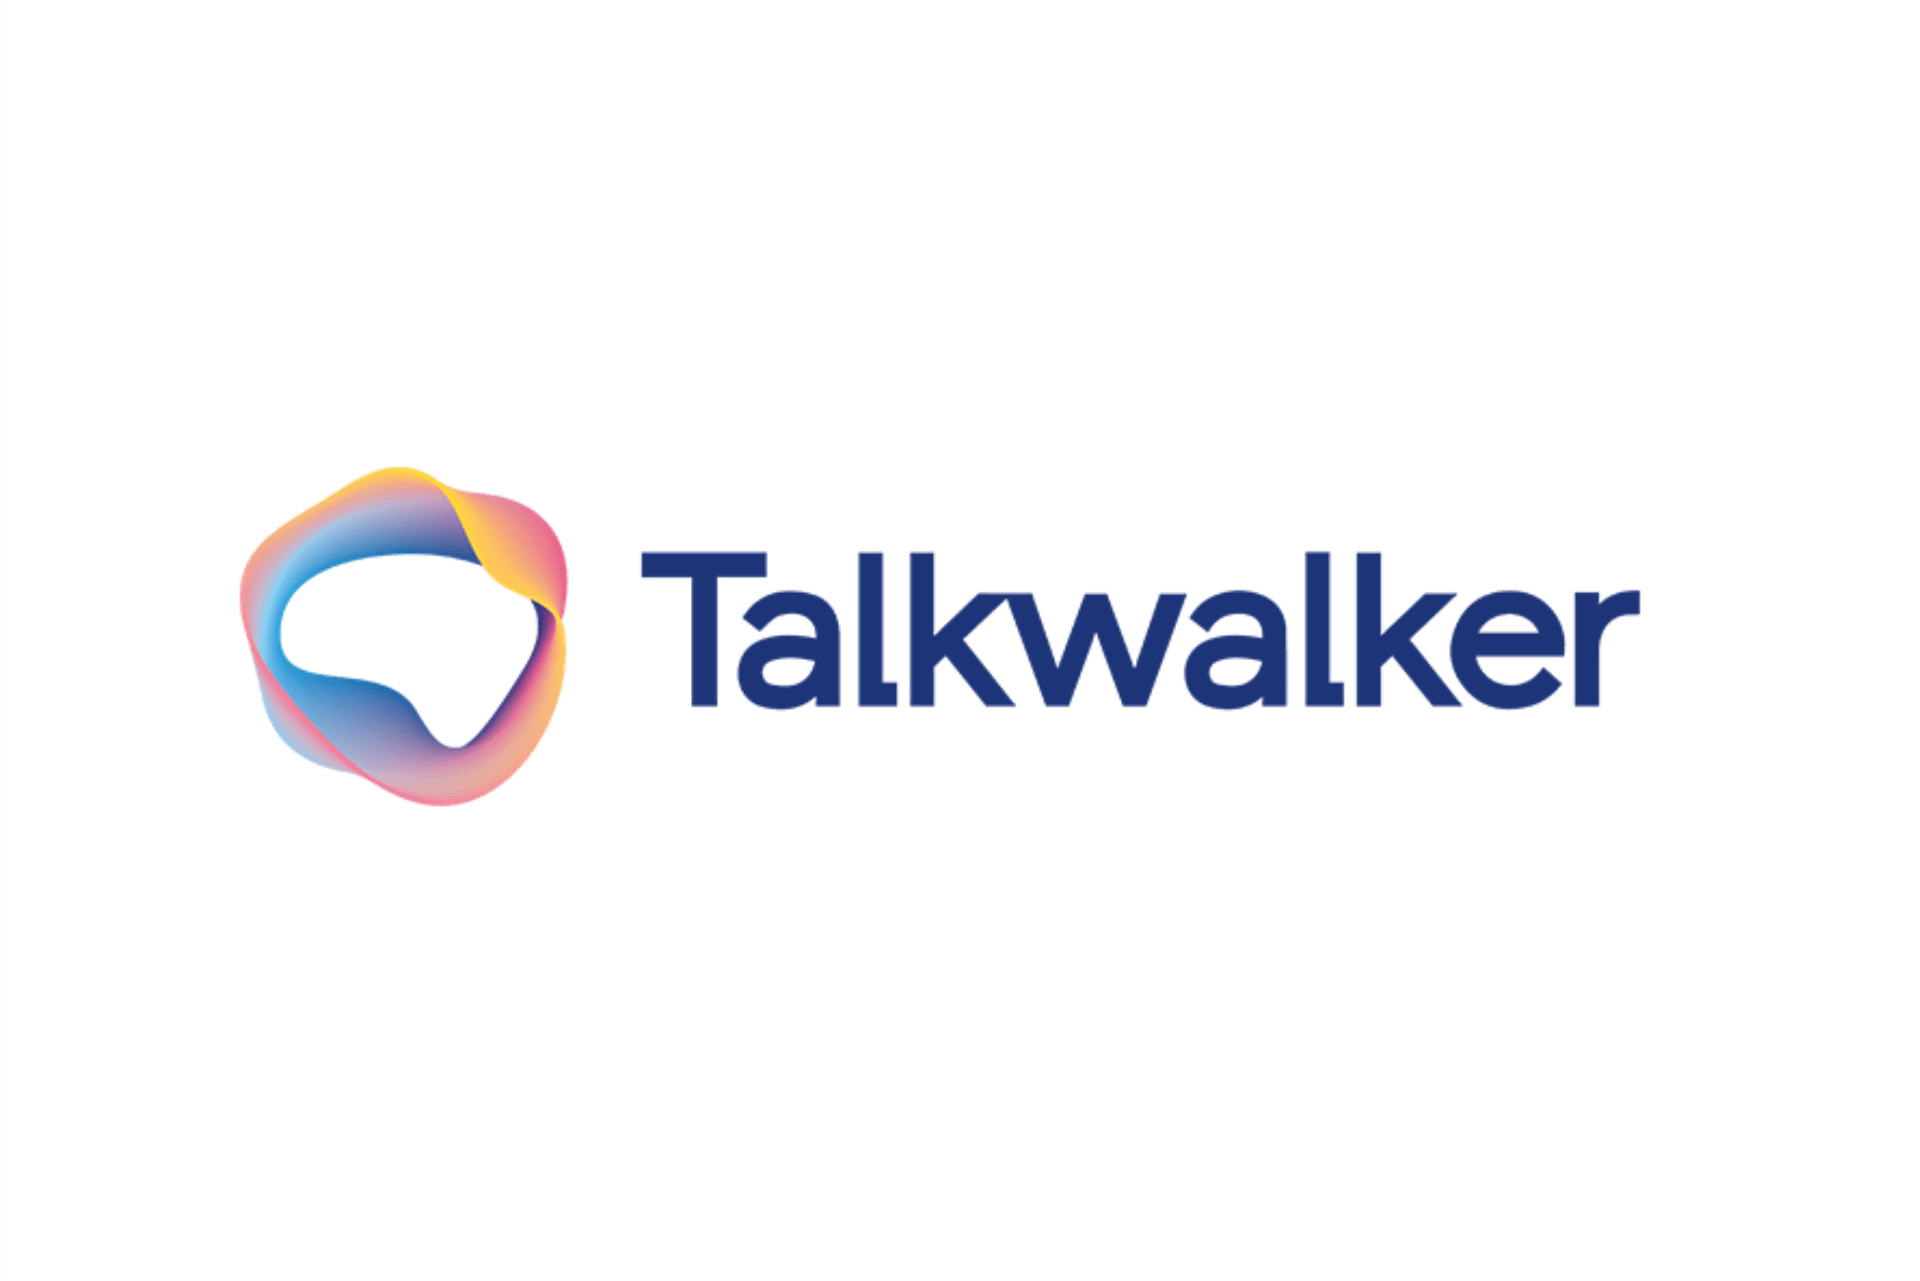 TalkWalker